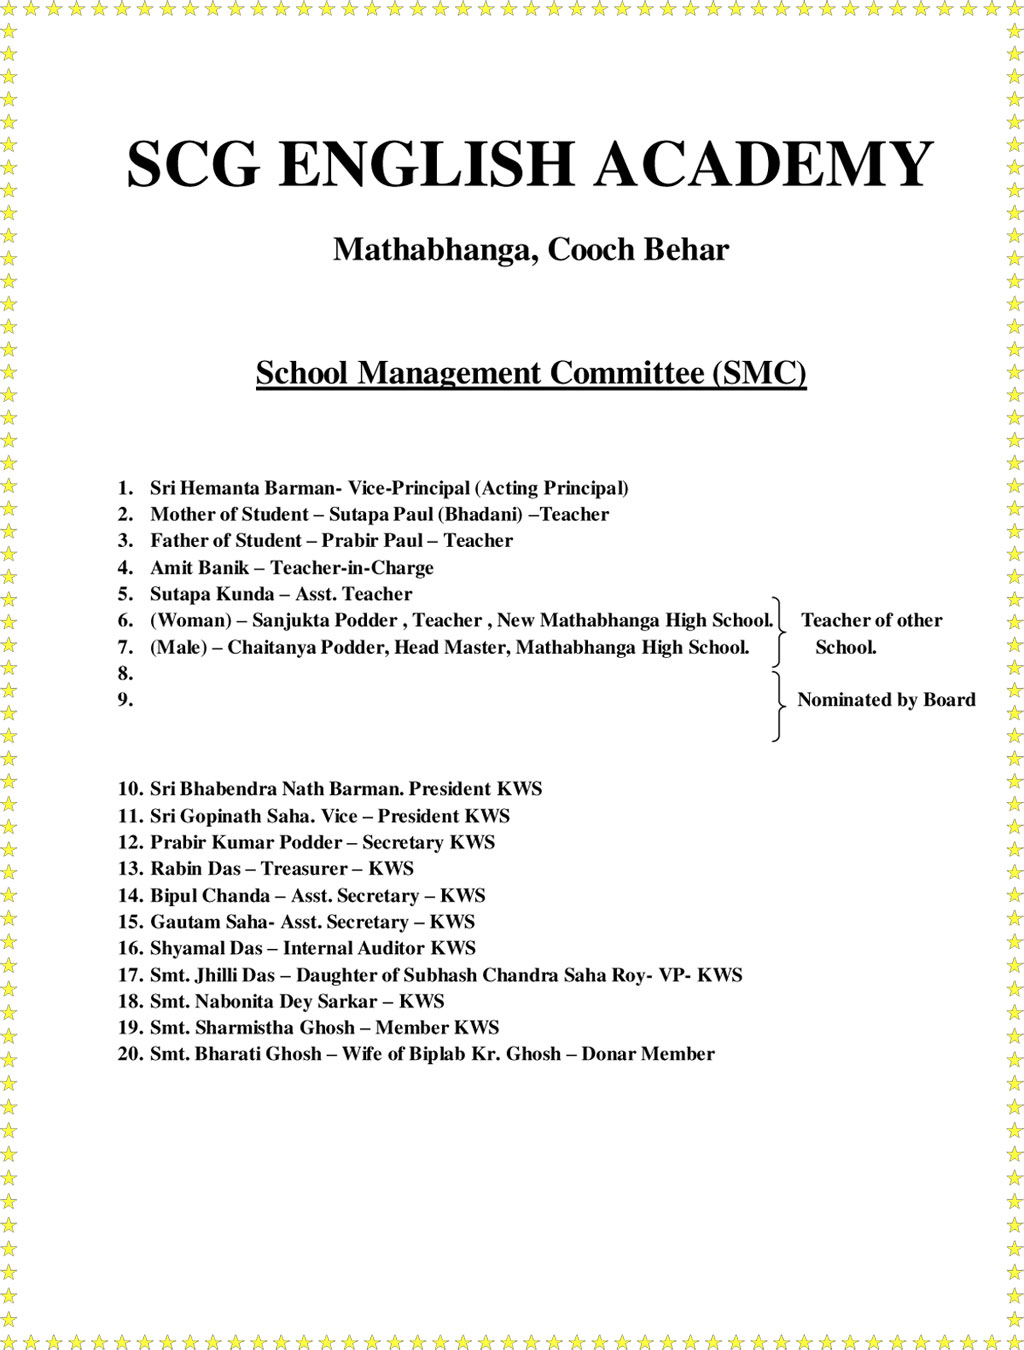 School Management Committee